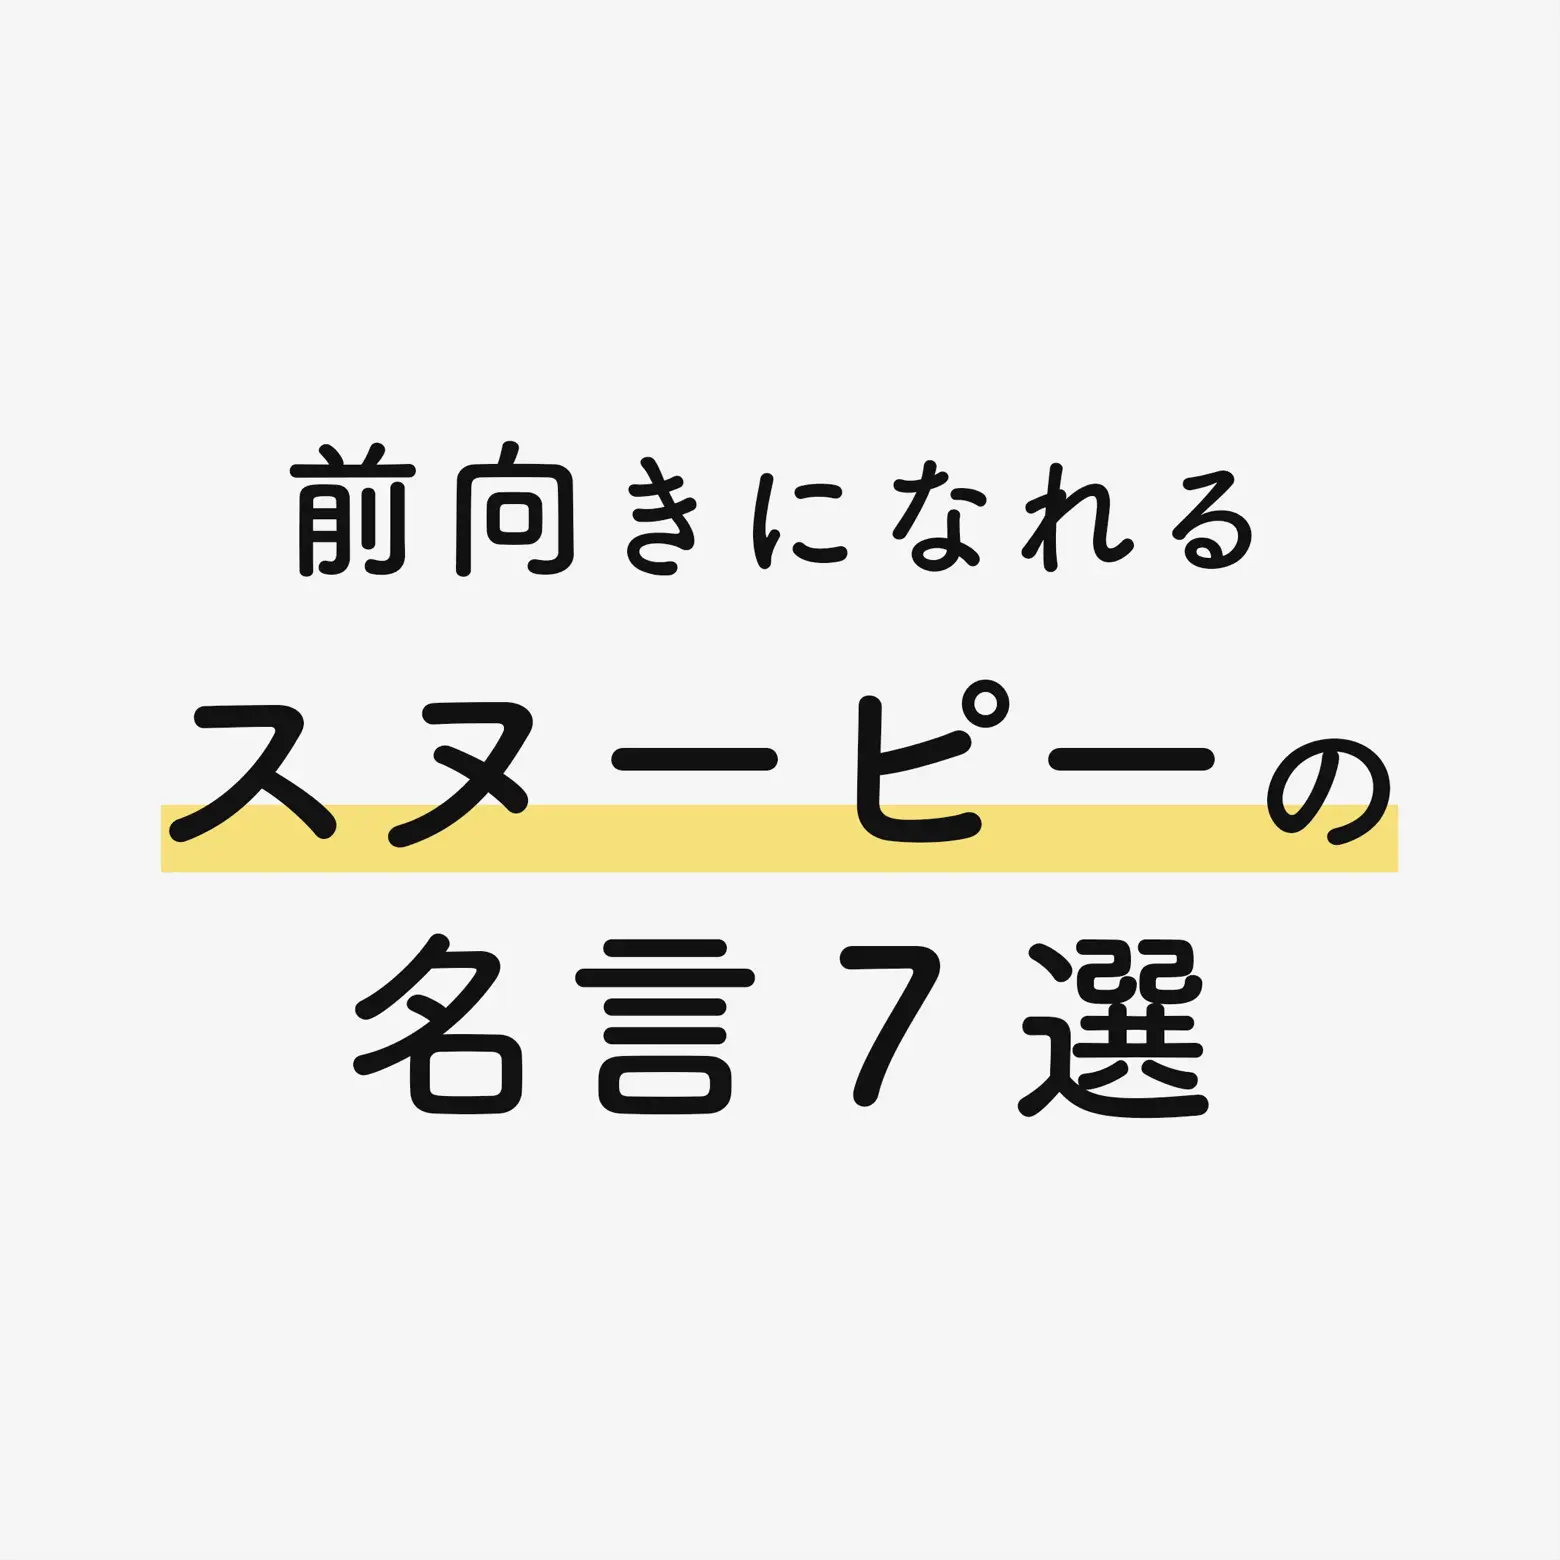 前向きになれる スヌーピーの名言 Nakata Lifeが投稿したフォトブック Lemon8